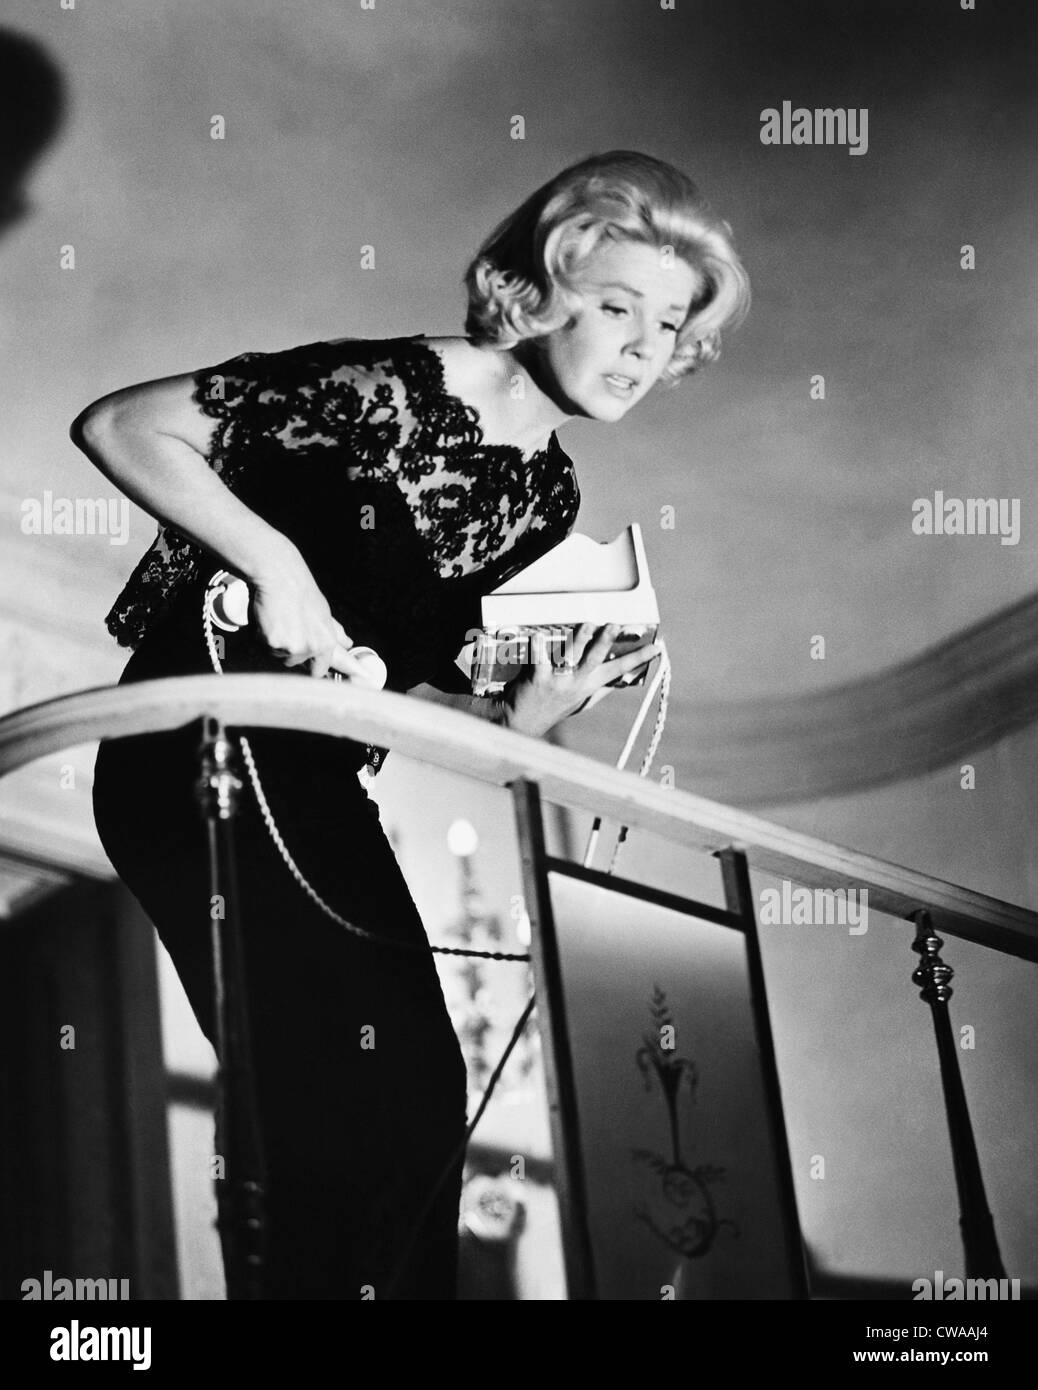 Mitternacht Spitze, Doris Day, 1960. Höflichkeit: CSU Archive / Everett Collection Stockfoto